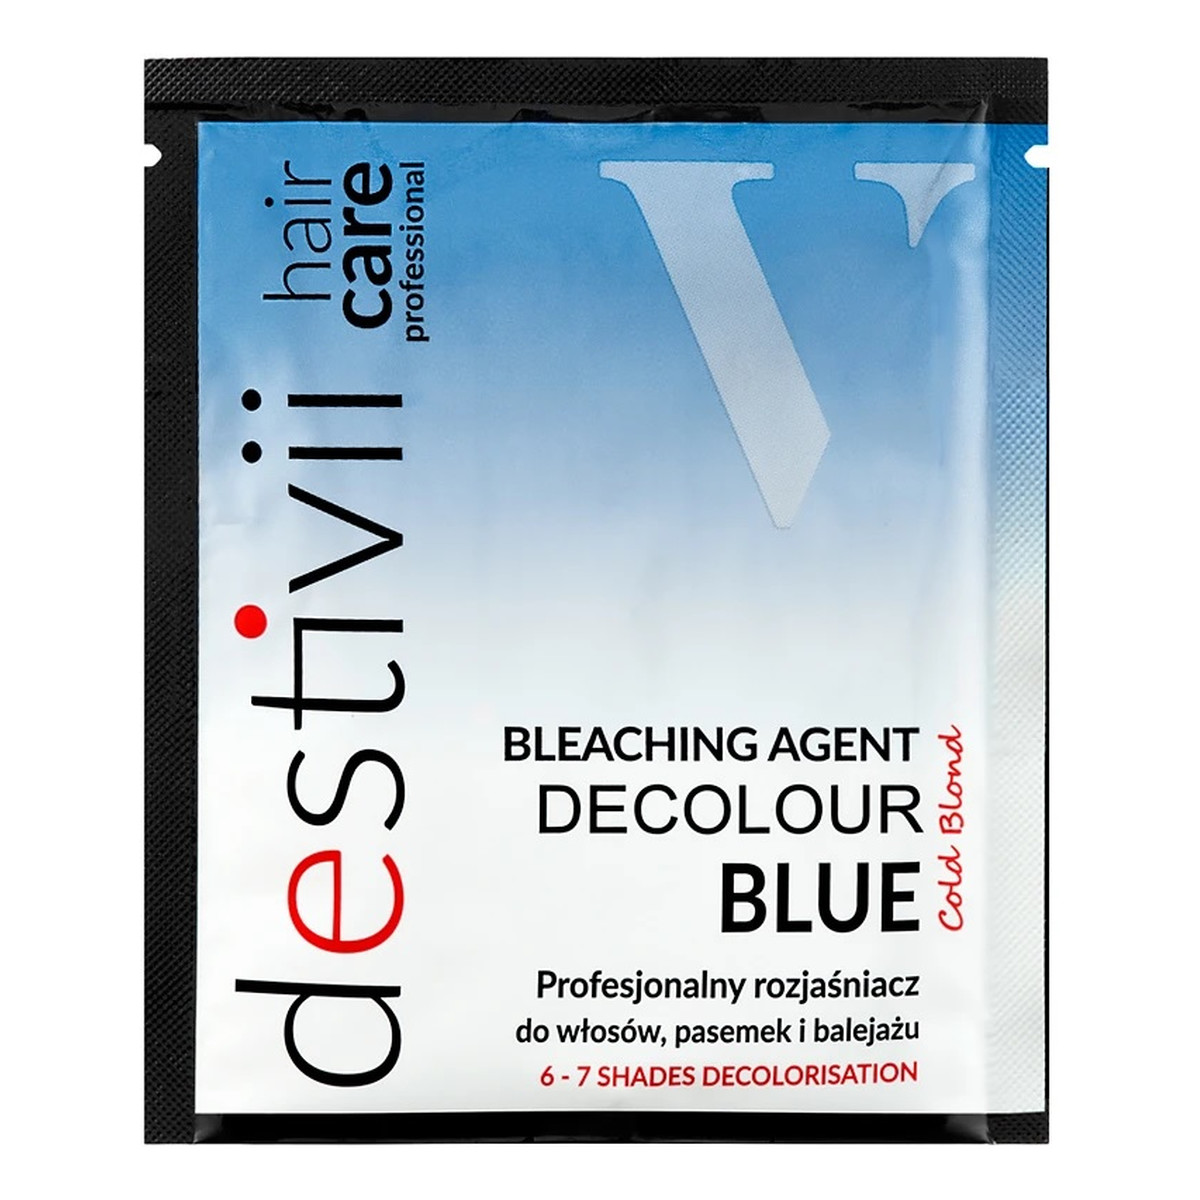 Destivii Destiny decolour blue profesjonalny rozjaśniacz do włosów pasemek i balejażu 40g